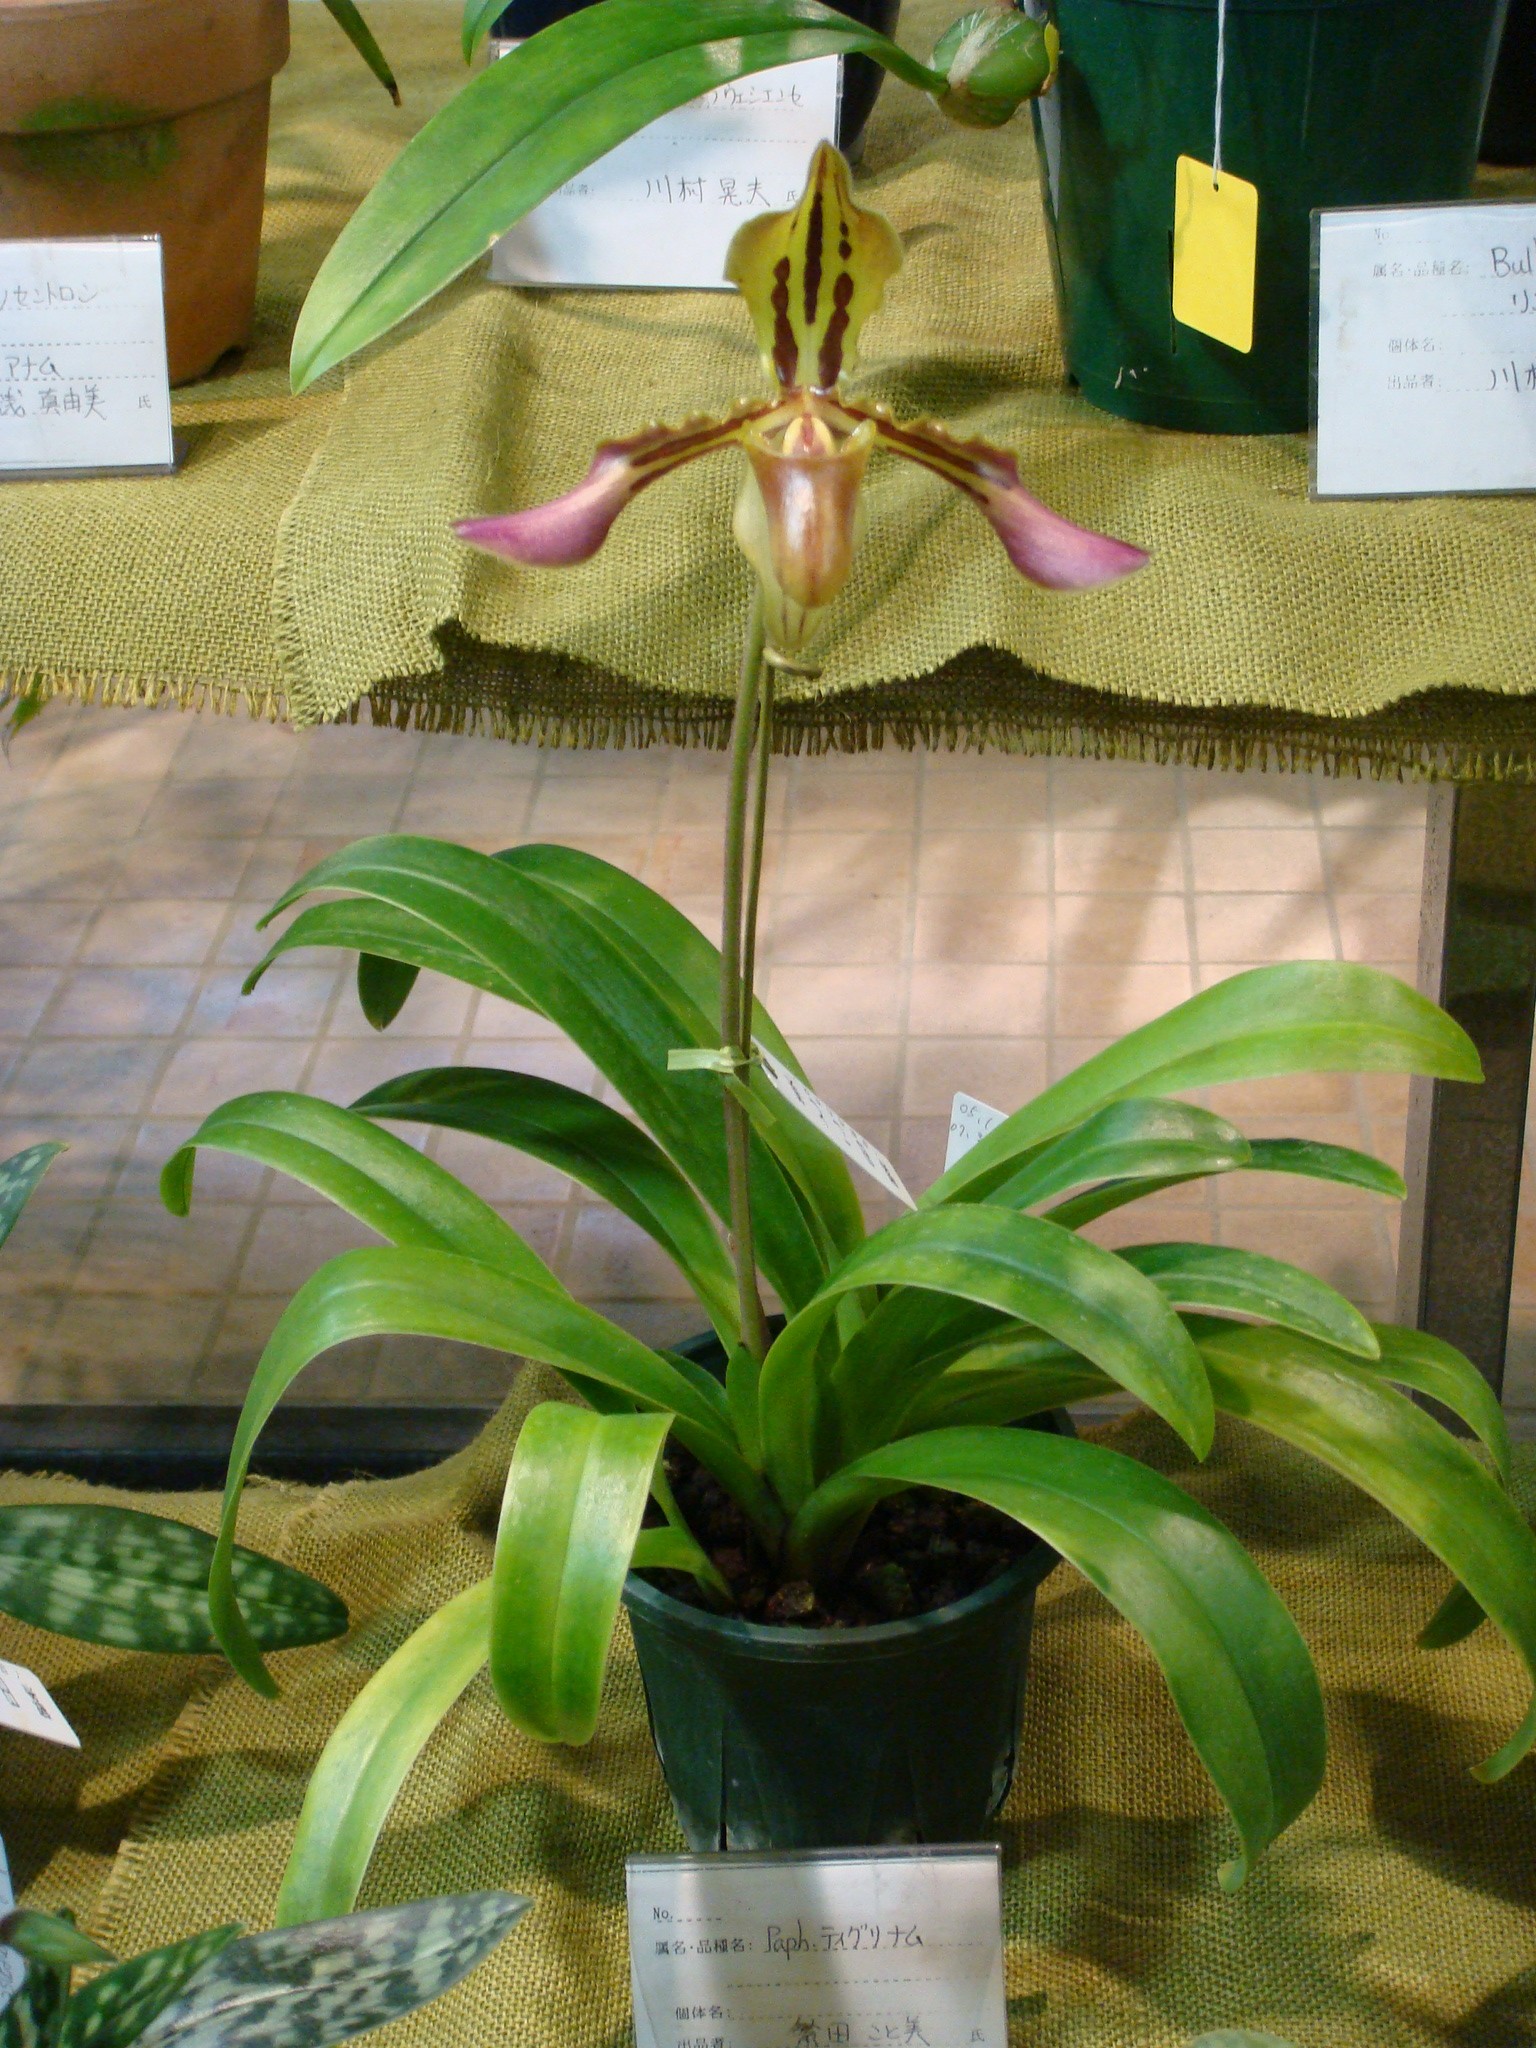 http://orchids.la.coocan.jp/Paphiopedilum/Paphiopedilum%20tigrinum/DSC00385.JPG